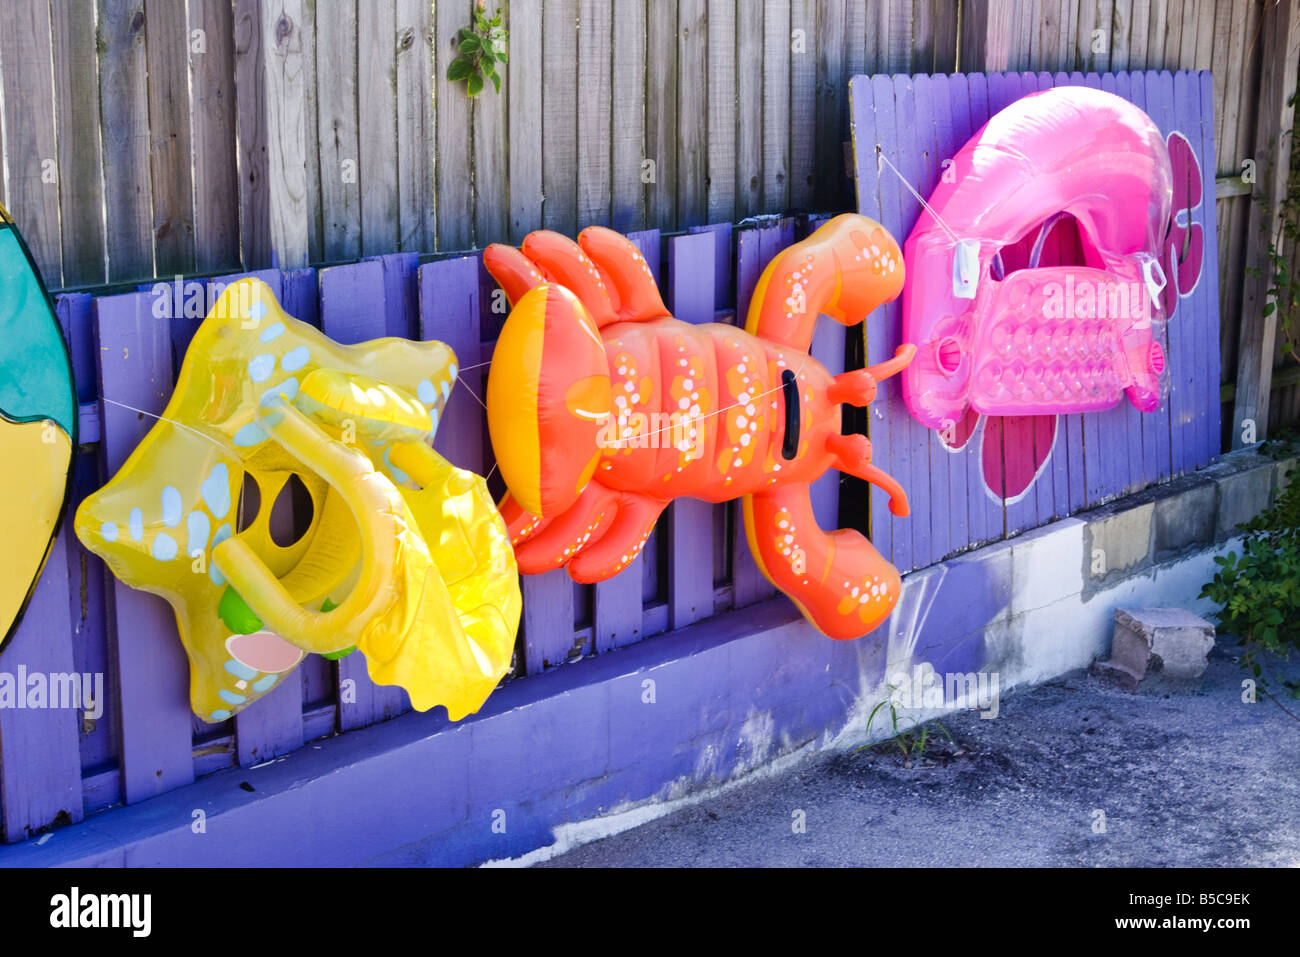 L'eau jouets gonflables colorés accrochés sur un mur pourpre Banque D'Images